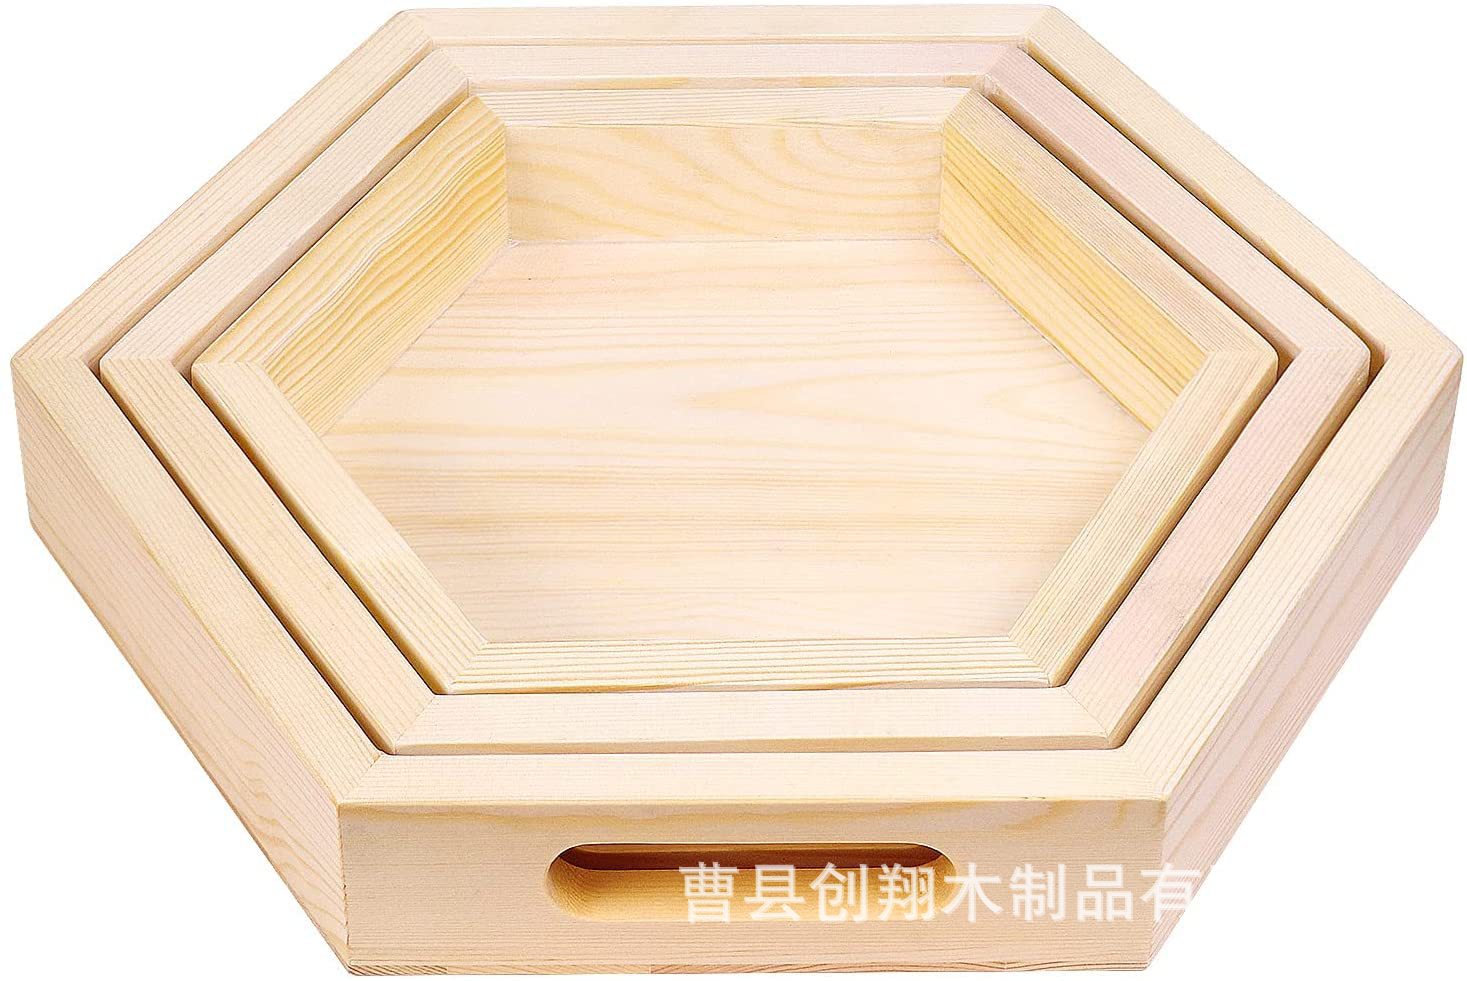 日式果盘松木创意六边形坚果点心托盘木质六角托盘木制家用餐盘详情图3